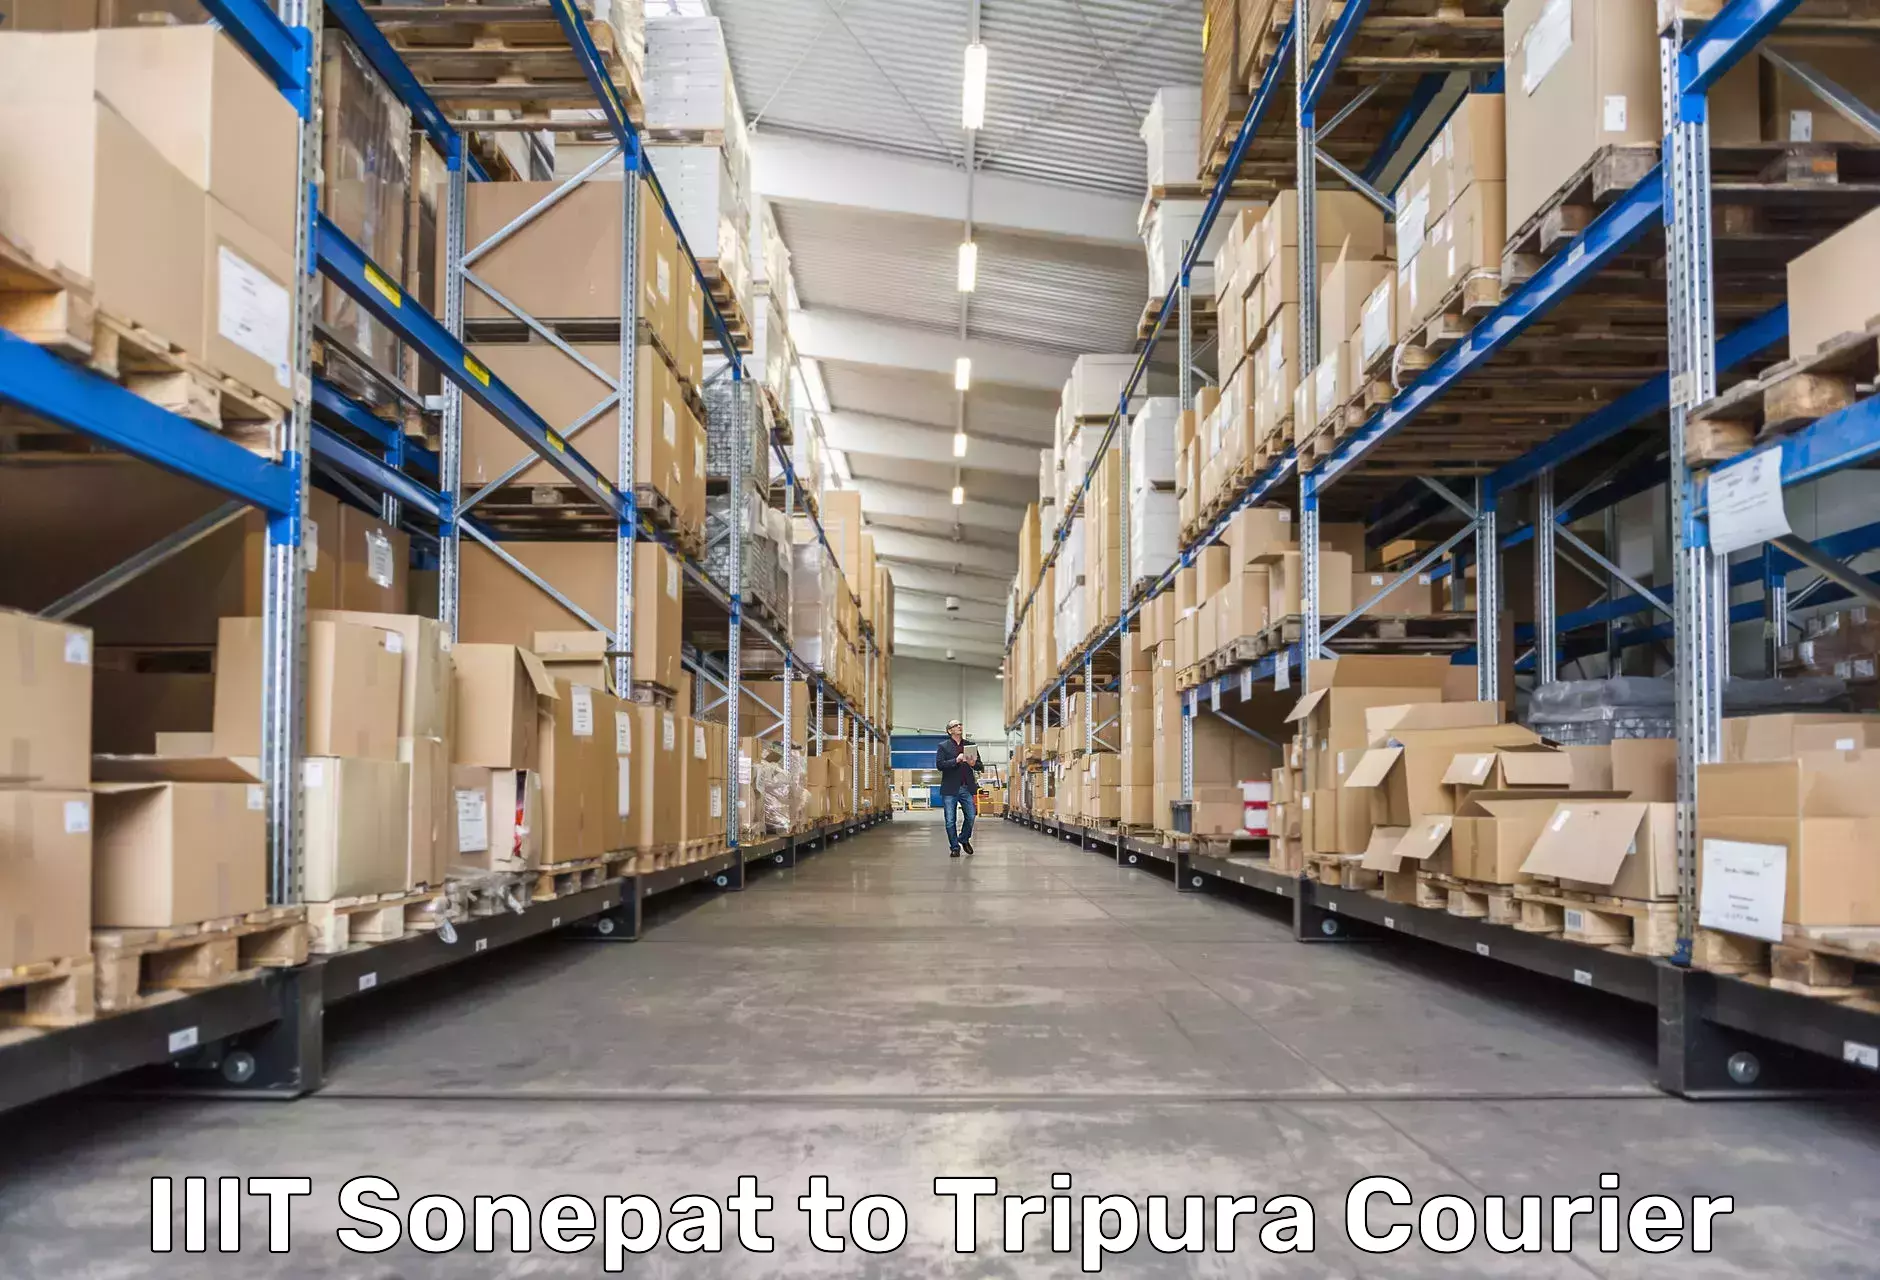 Cargo delivery service IIIT Sonepat to Amarpur